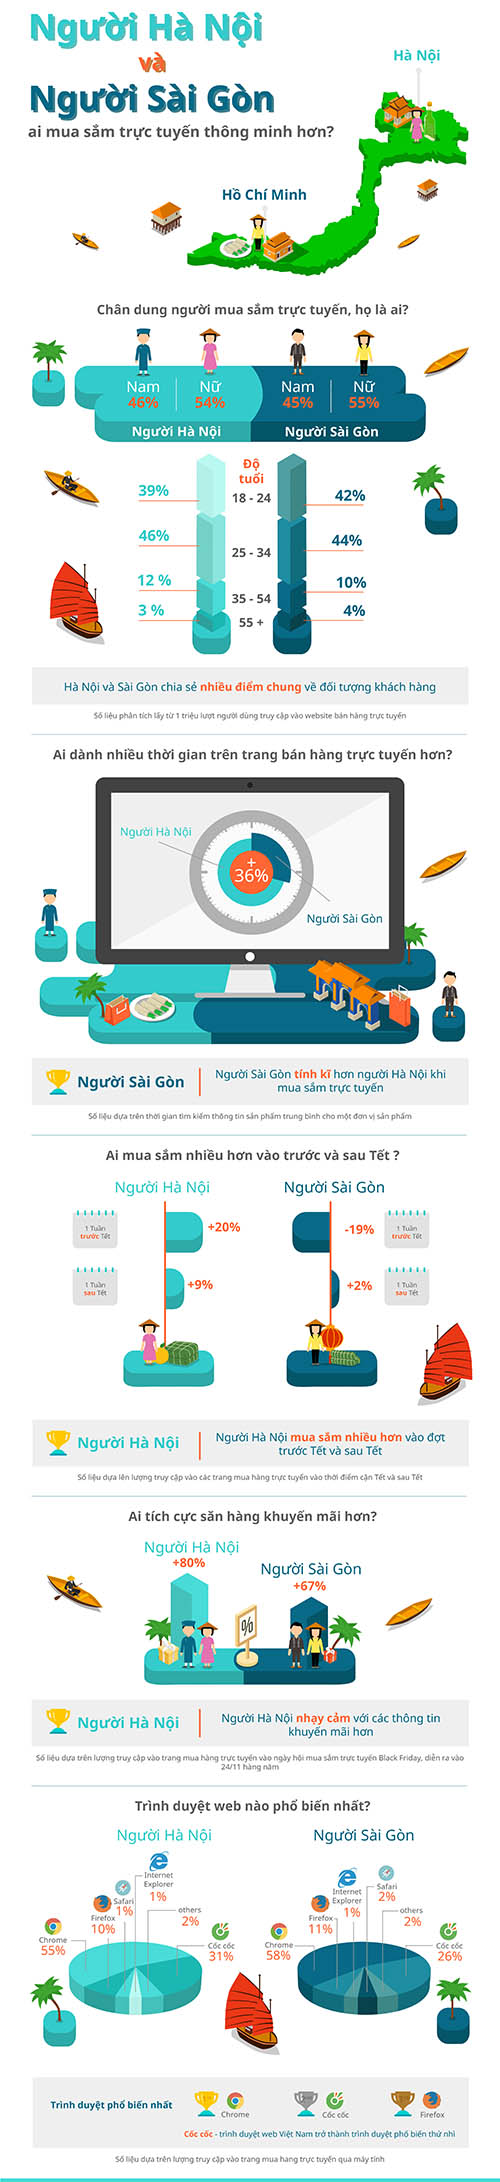 [Infographic] Sự khác biệt giữa người HN và TP.HCM khi mua hàng online - 1